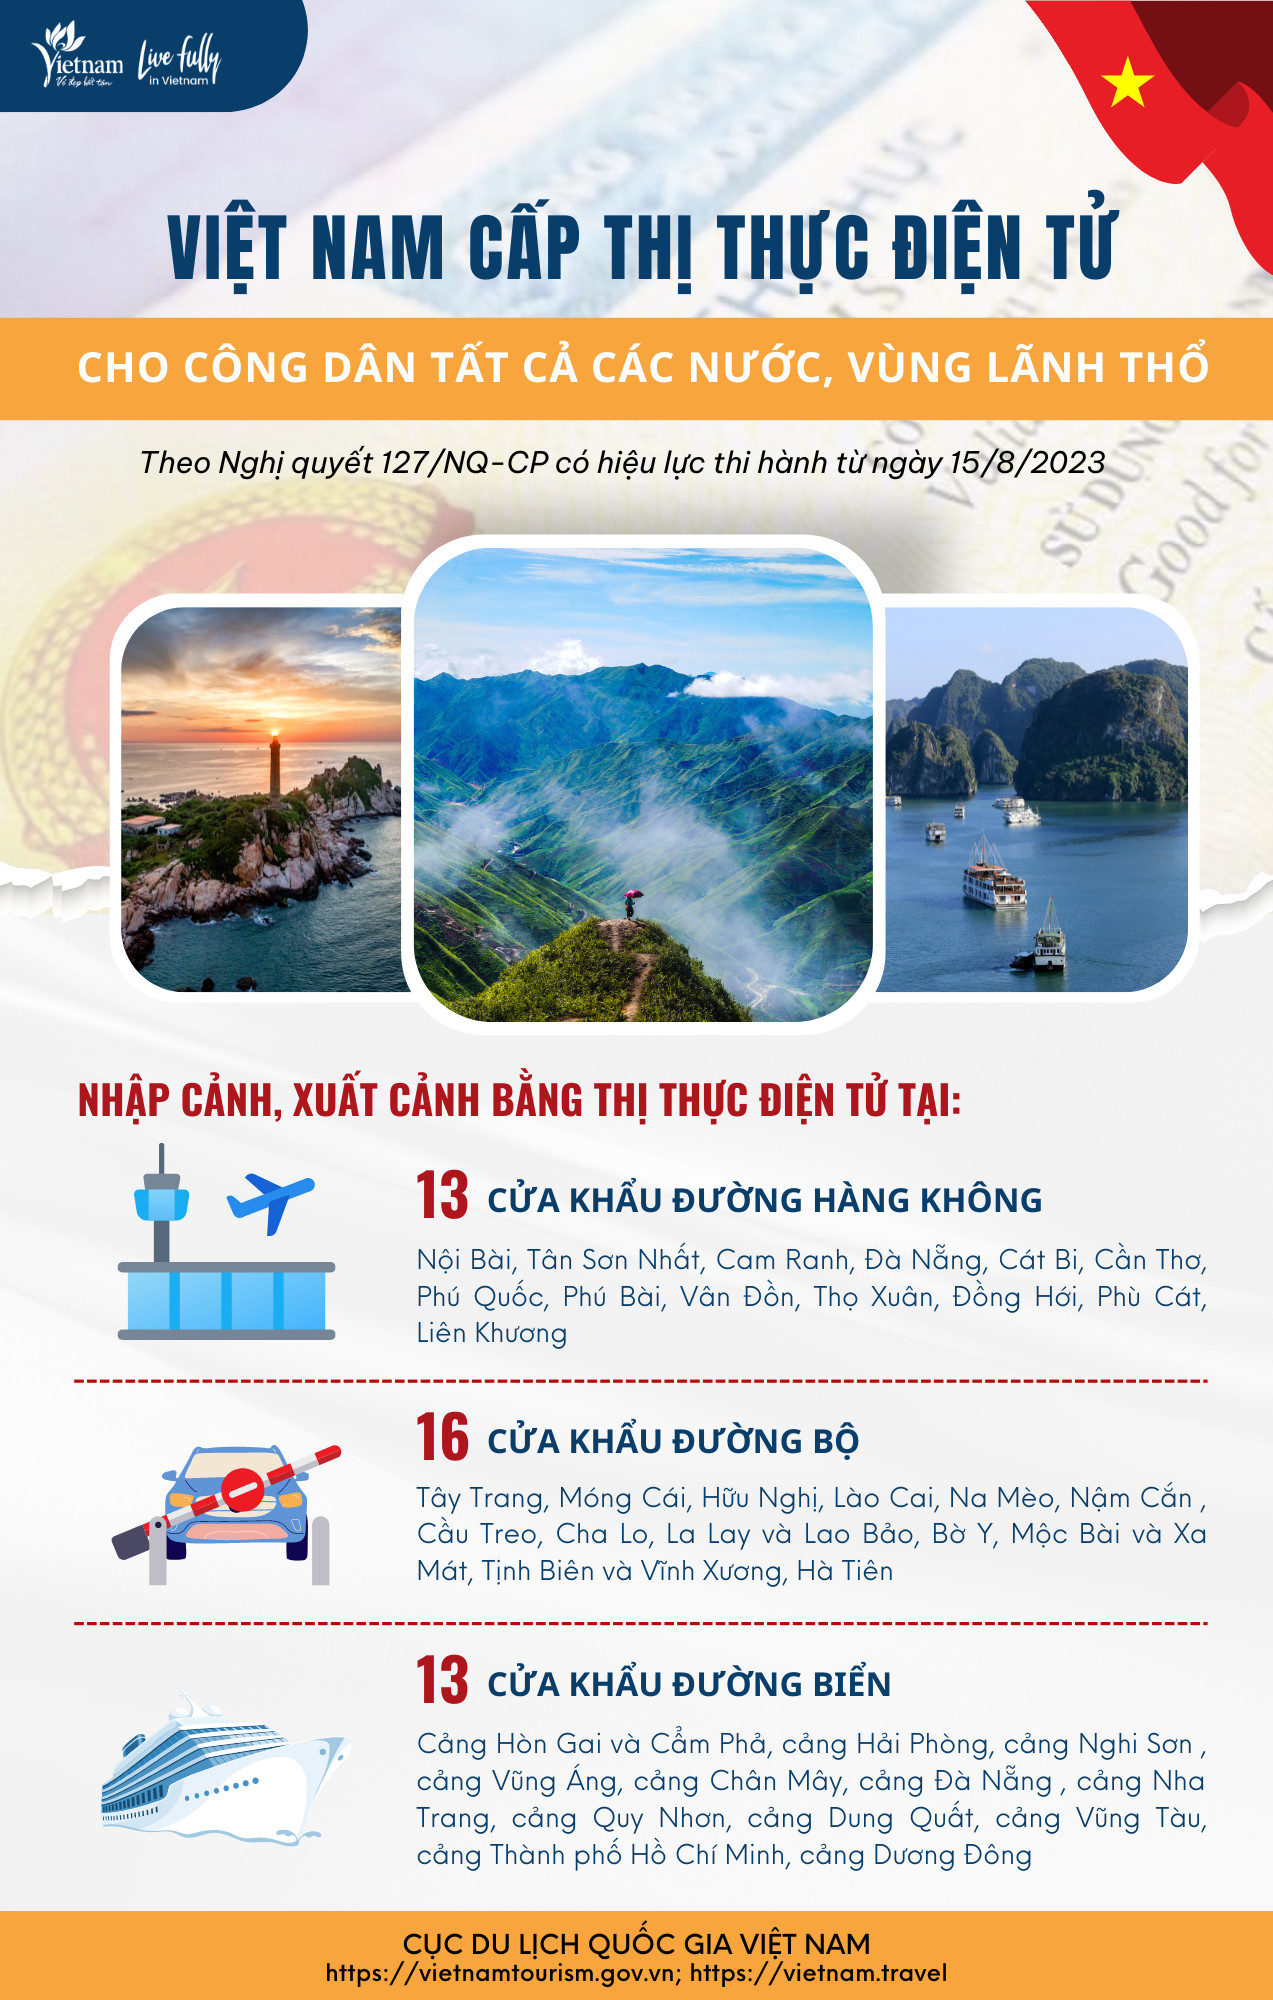 [Infographic] Việt Nam cấp thị thực điện tử cho công dân tất cả các nước và vùng lãnh thổ